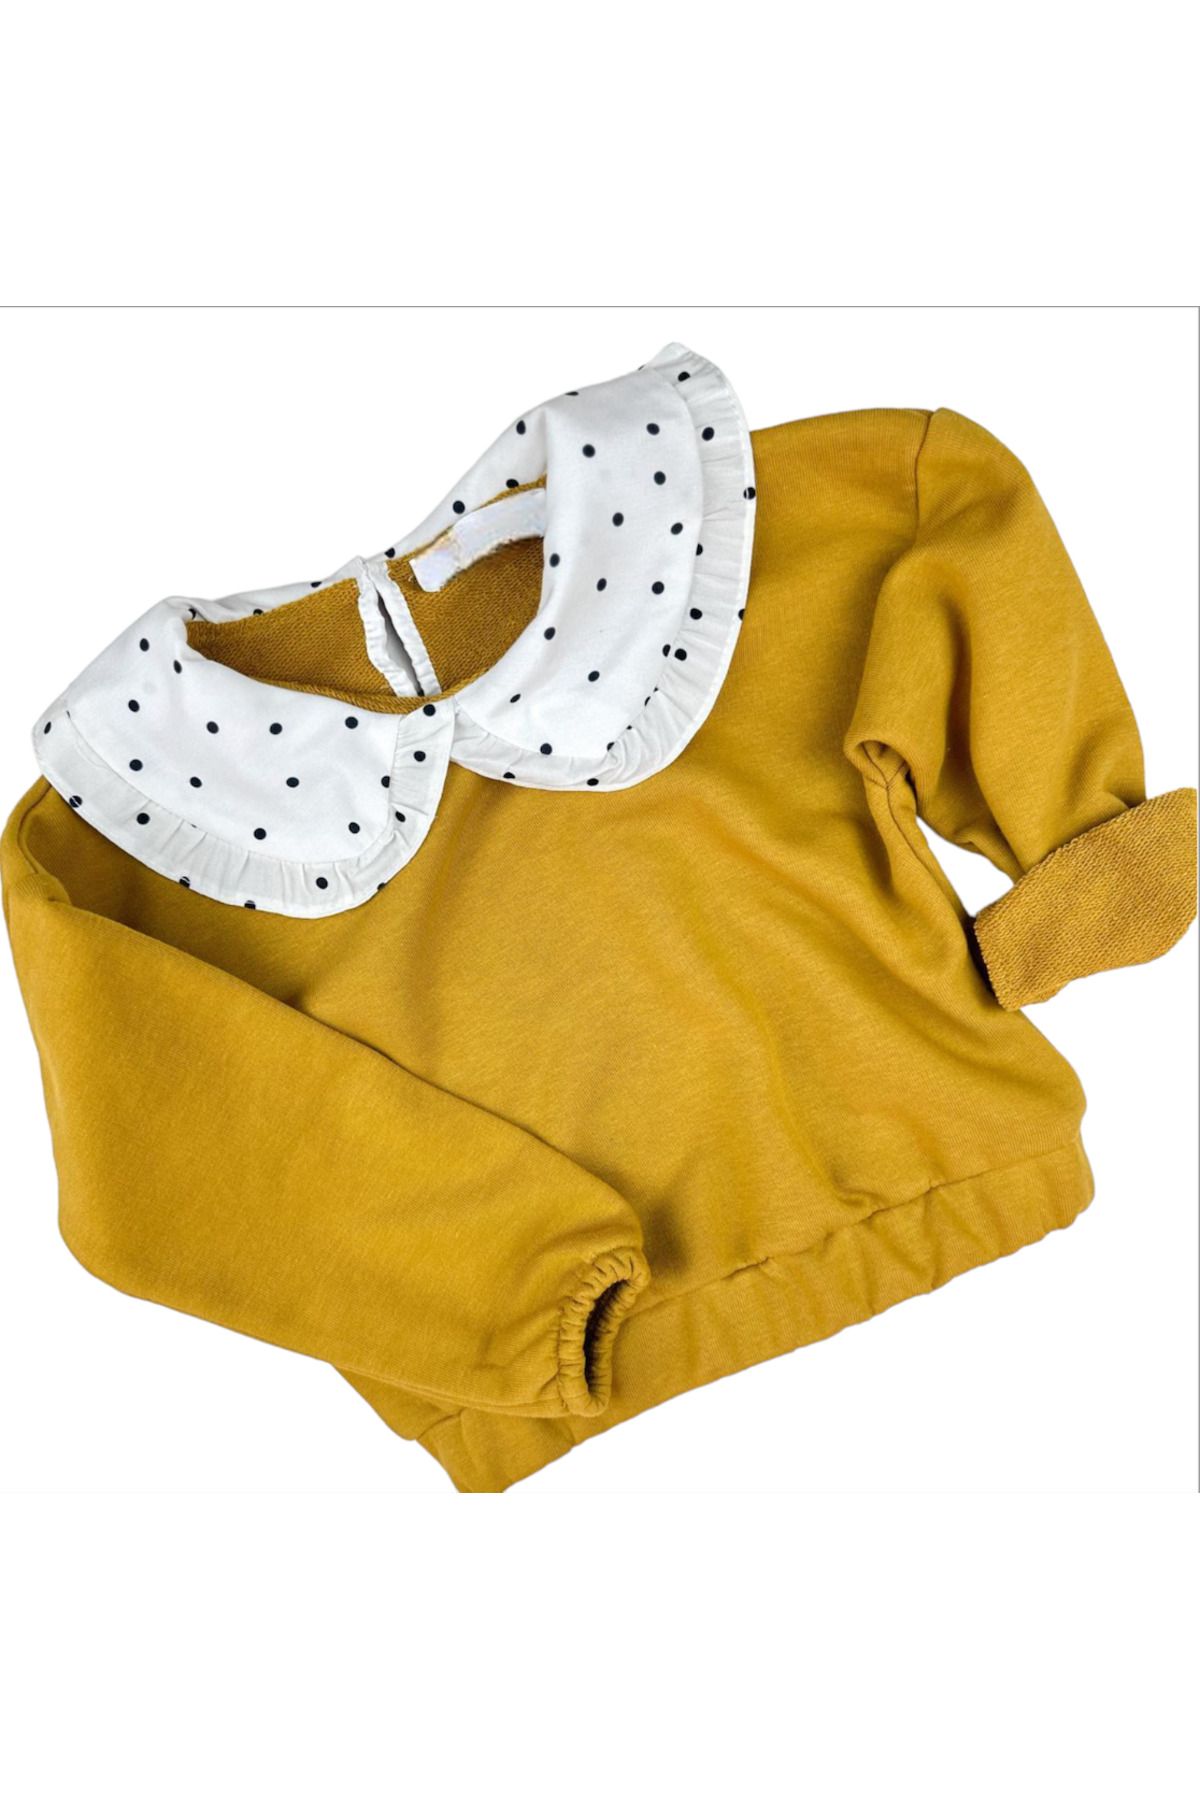 Lolliboomkids Kız Çocuk Bebe Önlük Yaka Hardal Renk Damla Düğme Kapama 3 İplik Üst Giyim